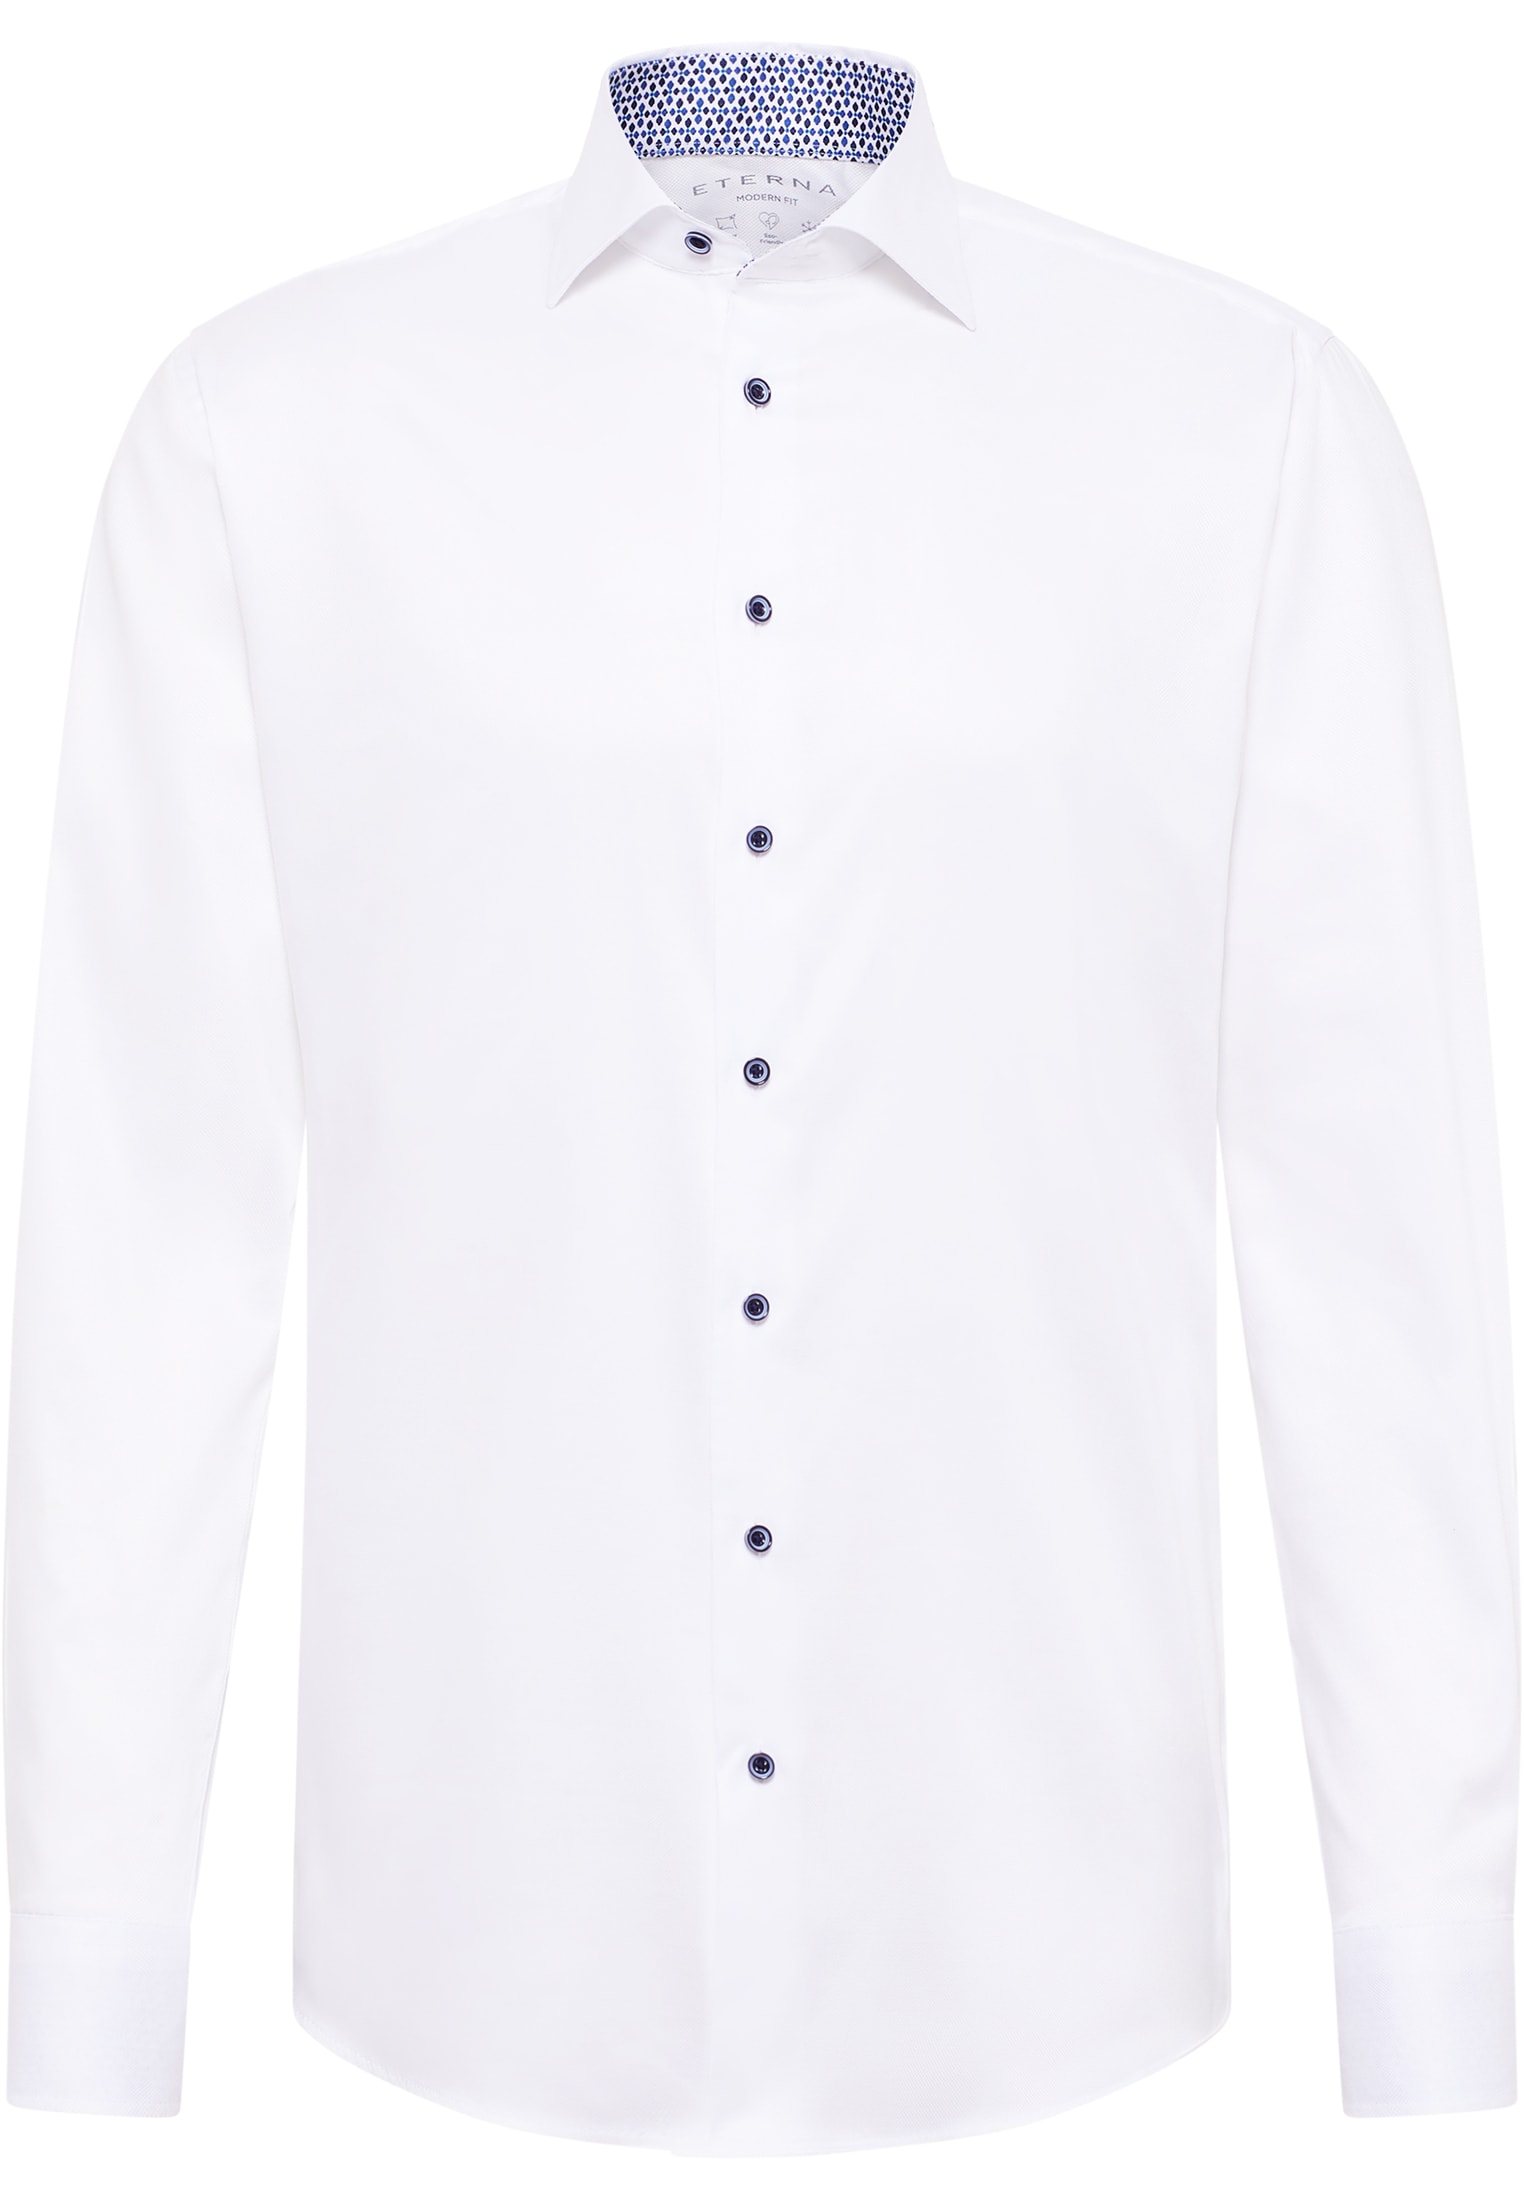 MODERN FIT Performance Shirt in weiß strukturiert